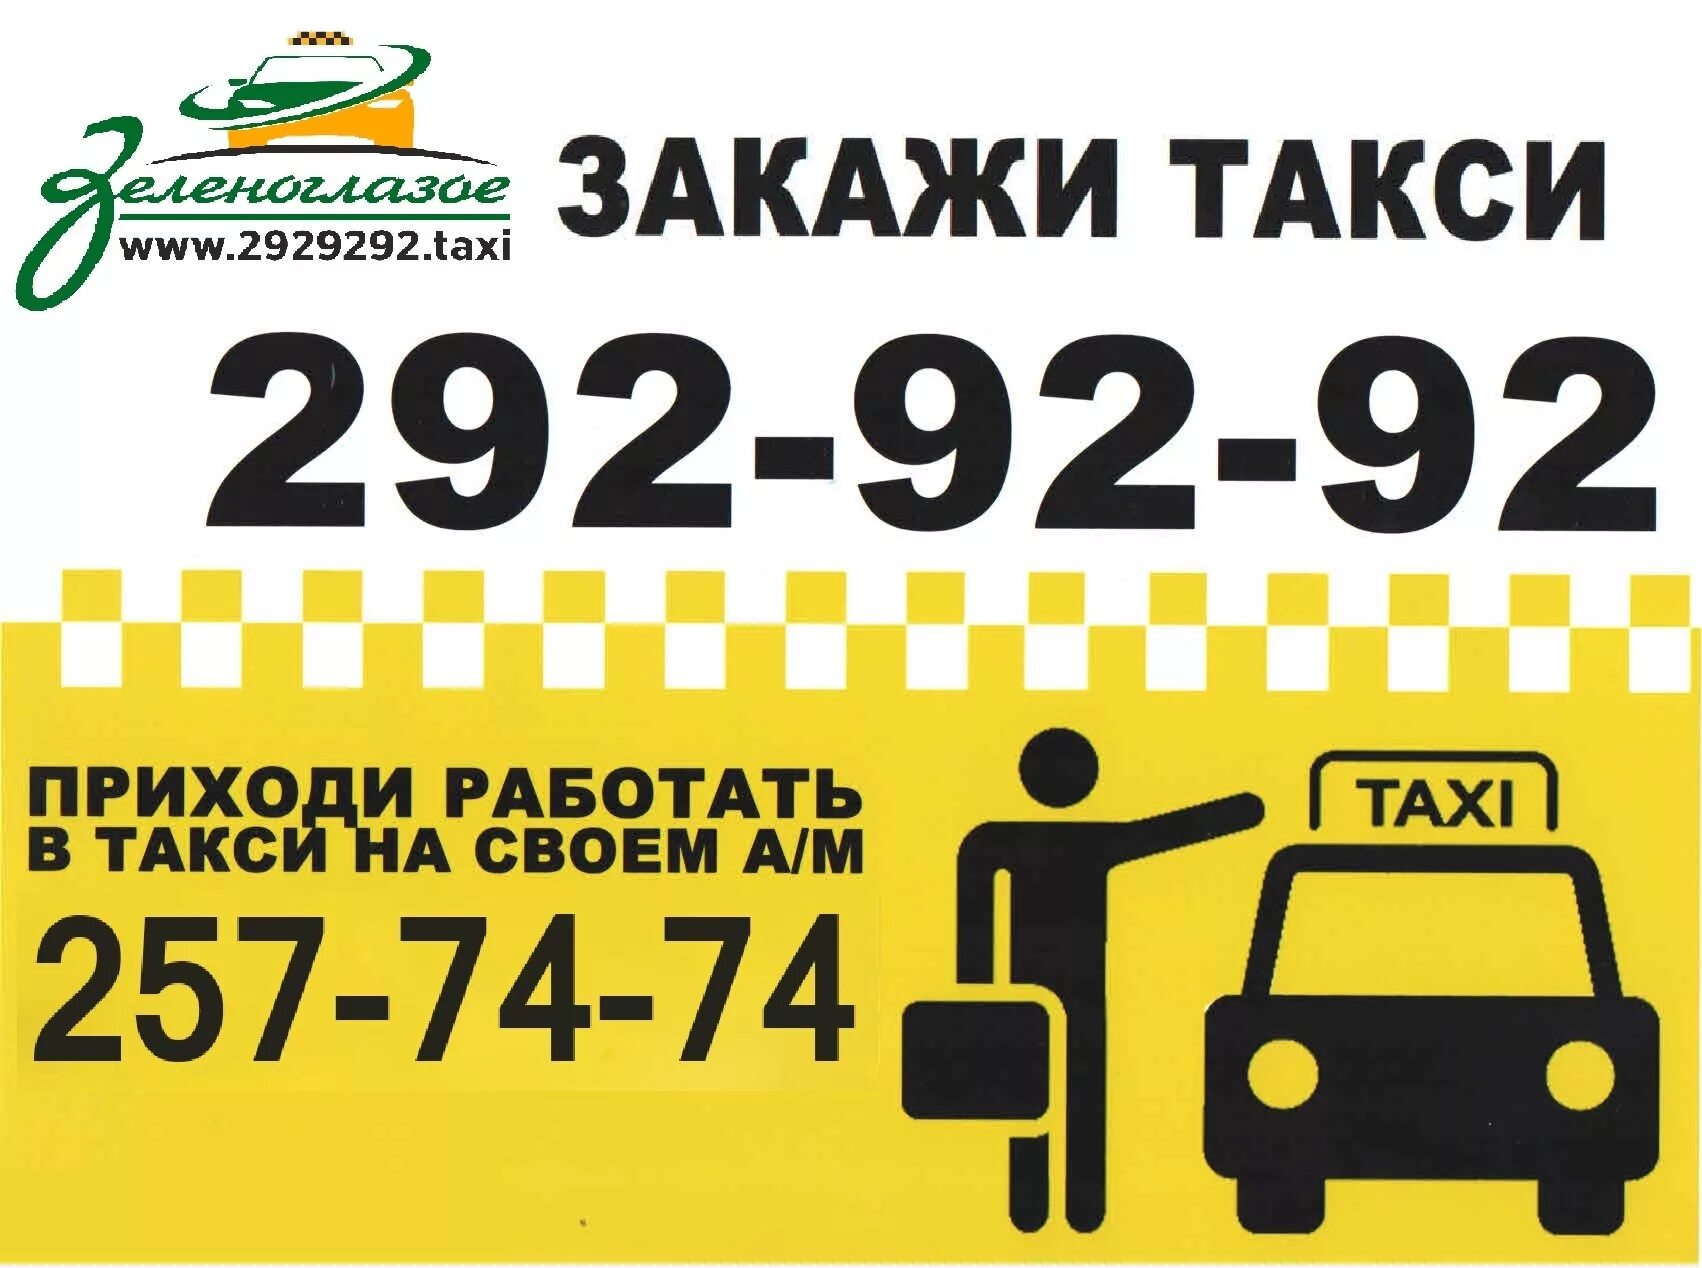 Телефон такси. Номер такси. Номера таксистов. Такси Уфа. Самое дешевое такси номер.